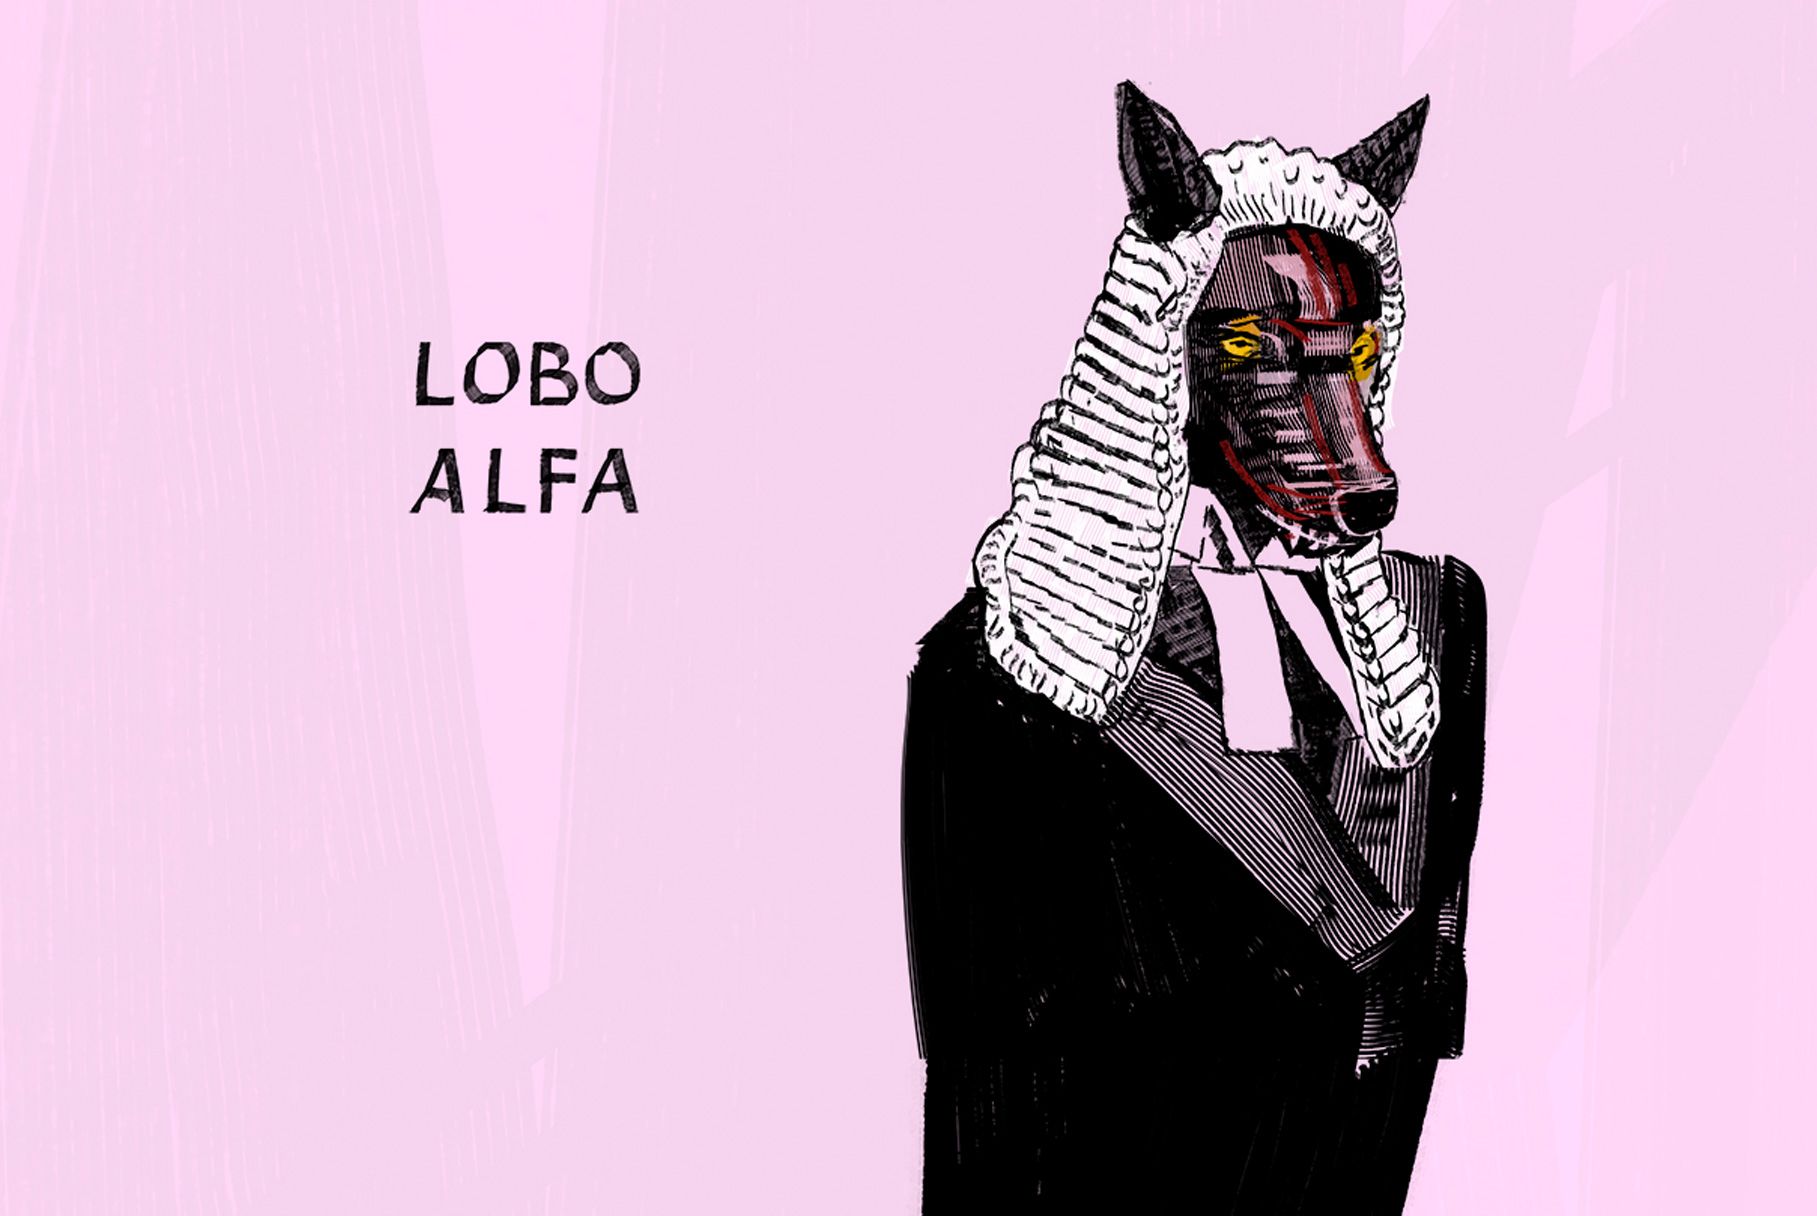 Lobo alfa, Justicia